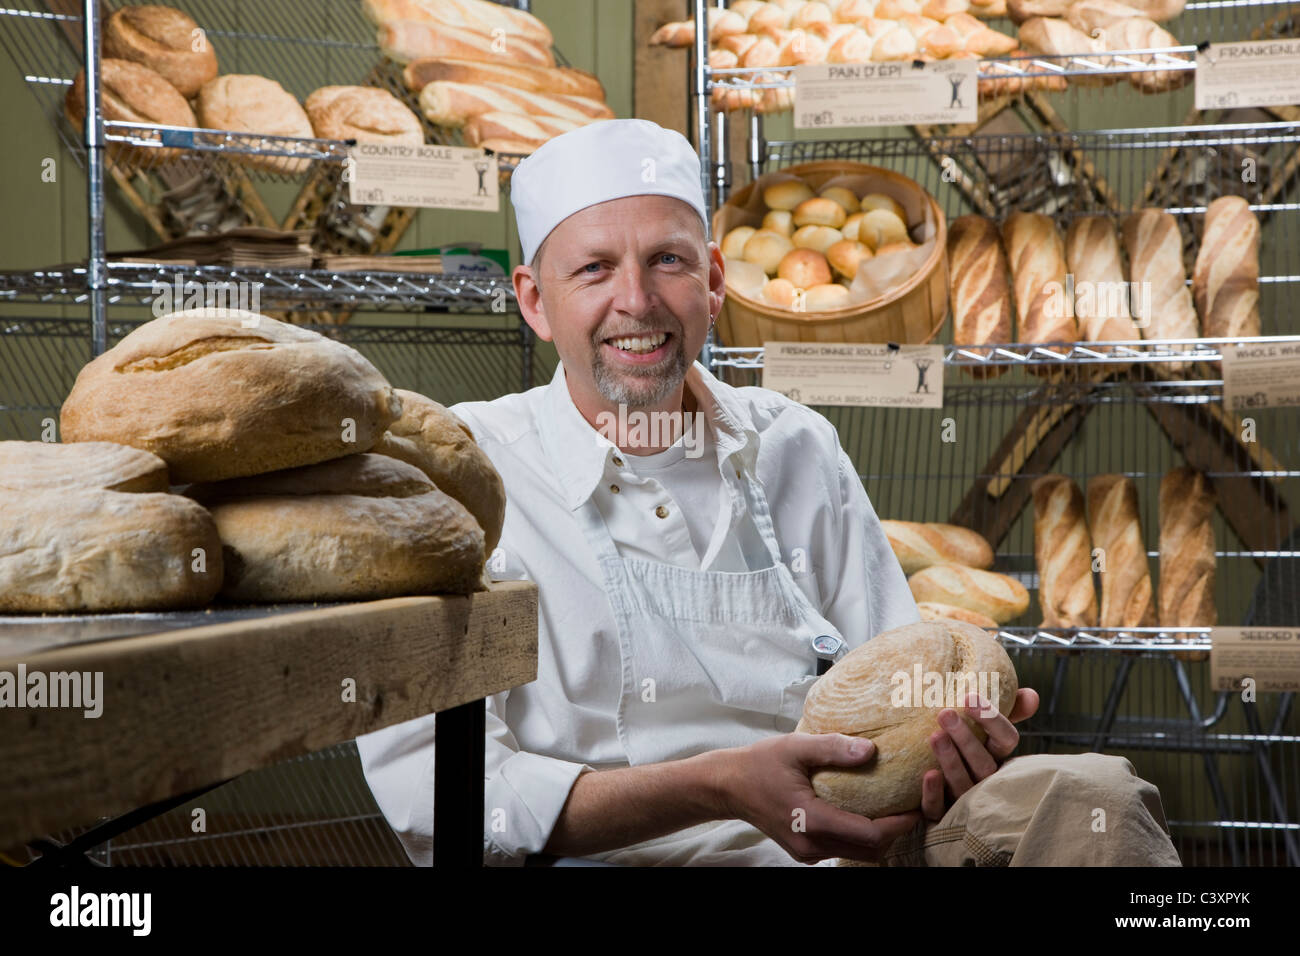 Cuisinier professionnel la préparation du pain frais dans une boulangerie commerciale Banque D'Images